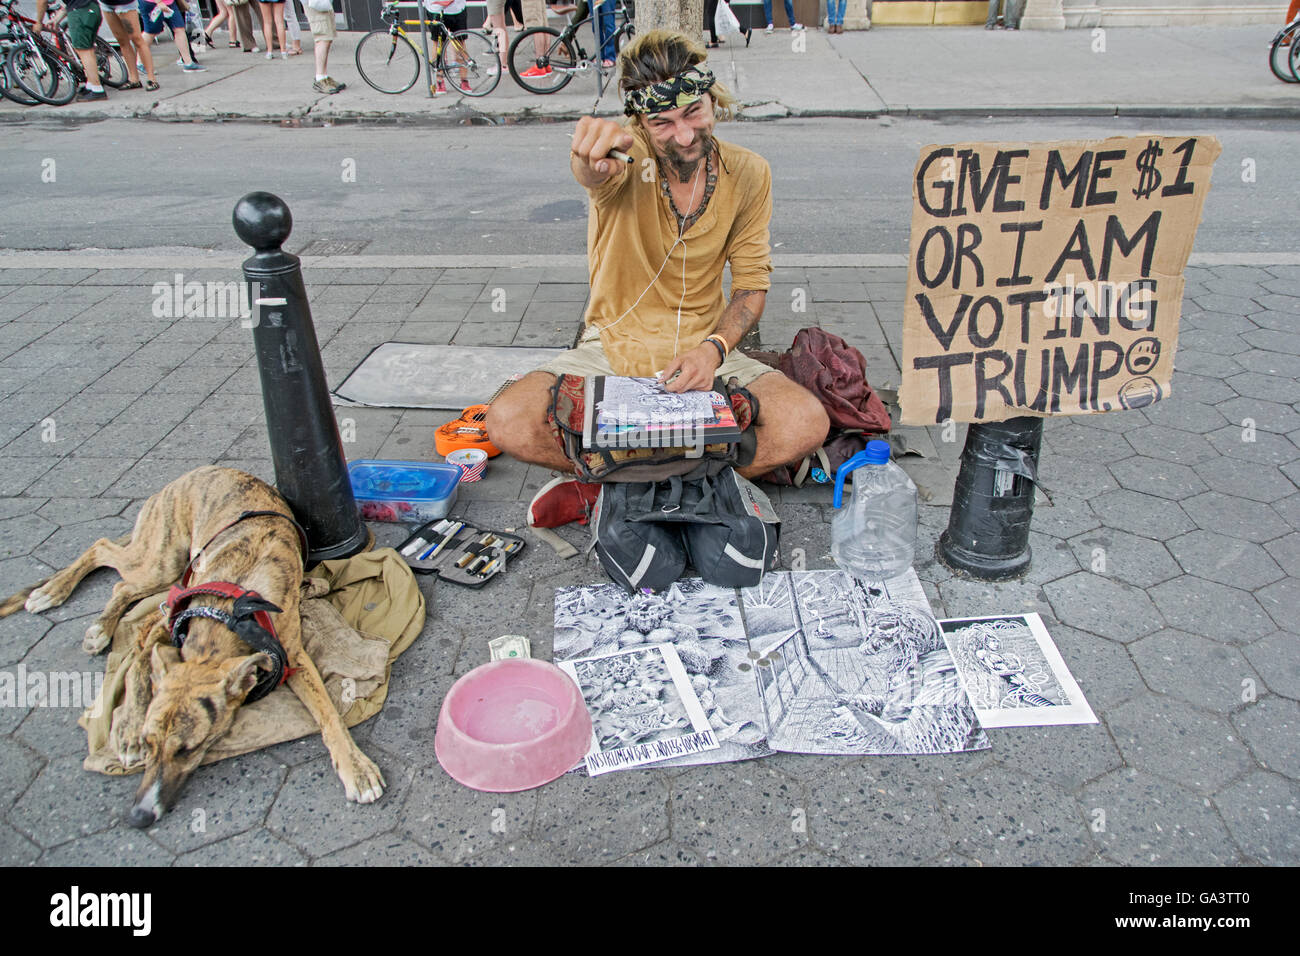 Un artista de la calle con un letrero amenazando que va a votar por el triunfo a menos que darle dinero. Union Square Park, la ciudad de Nueva York. Foto de stock